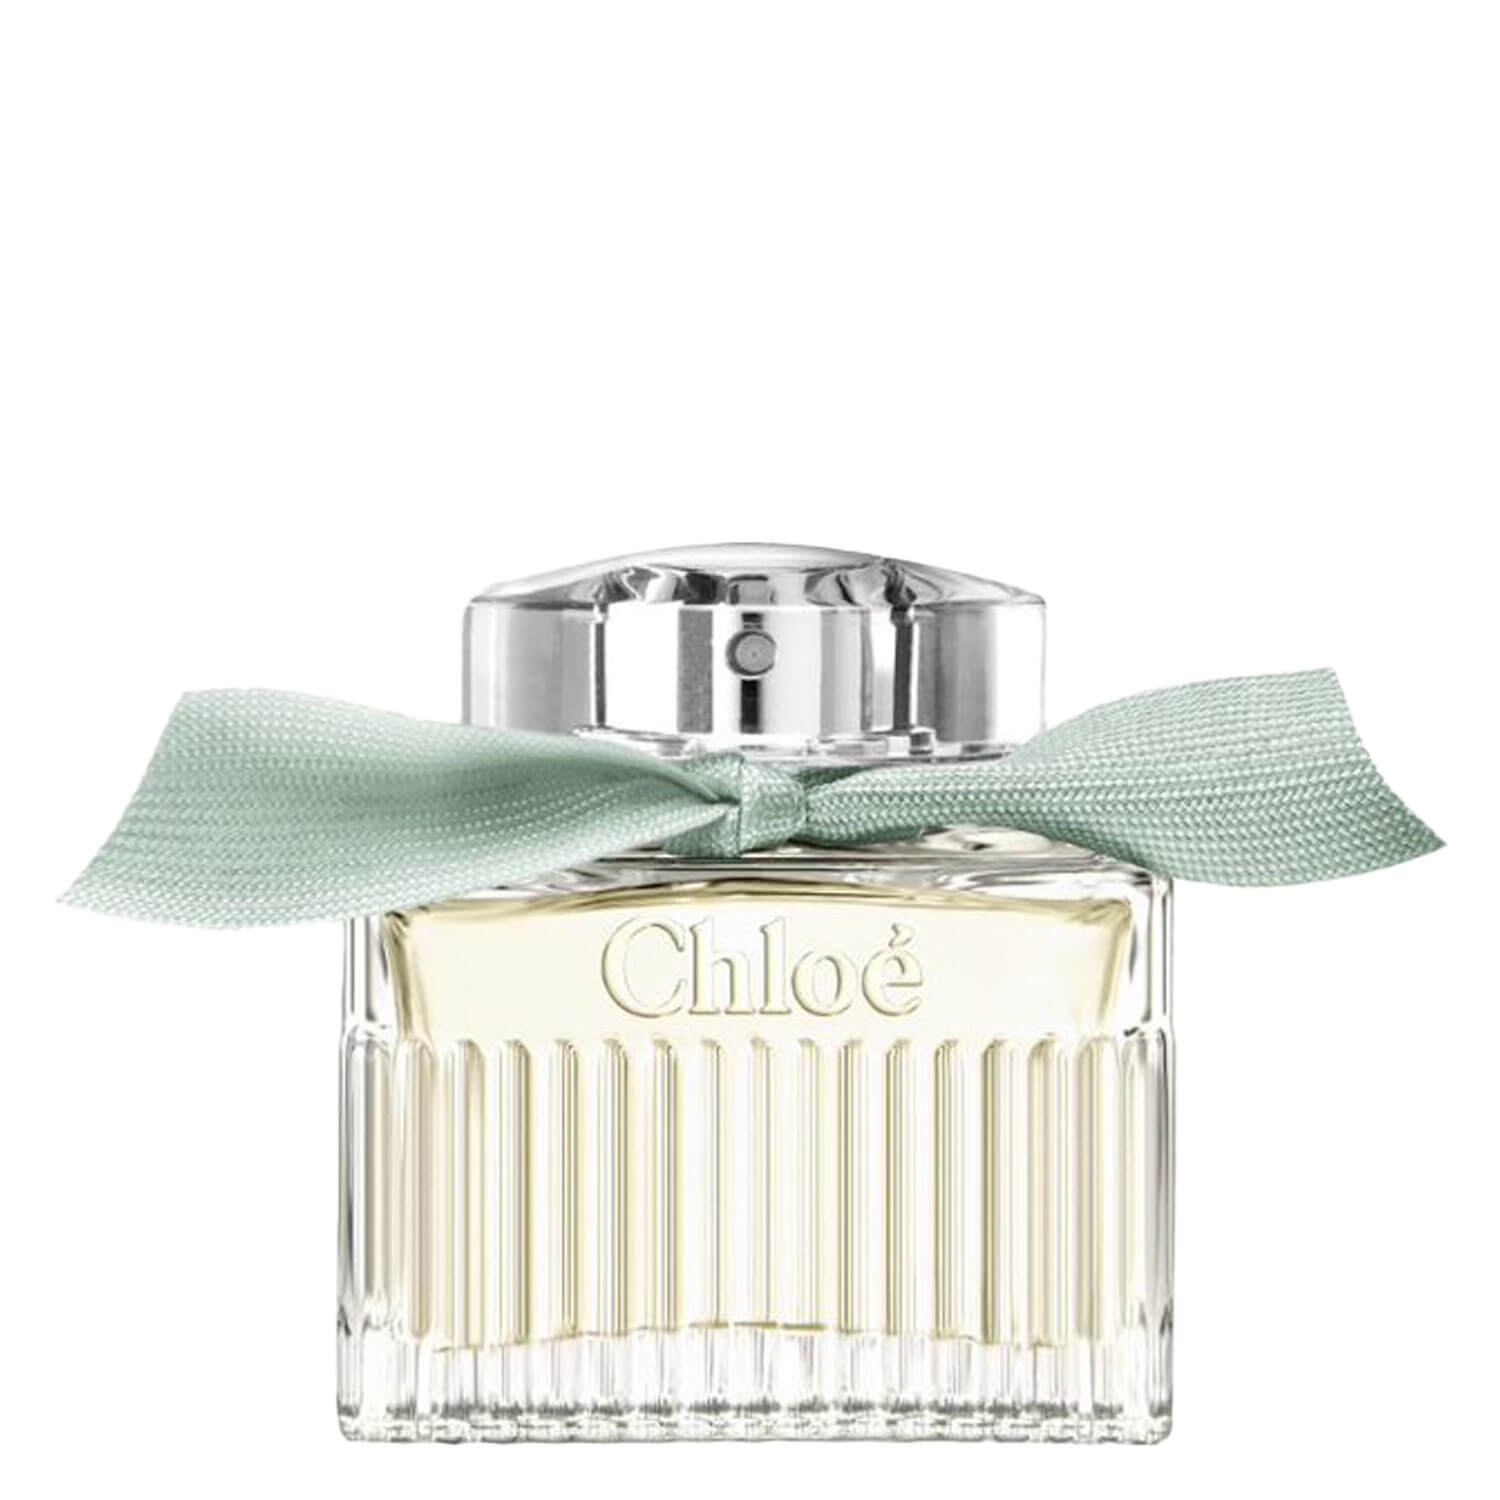 Produktbild von Chloé - Rose Bio Eau de Parfum Naturelle